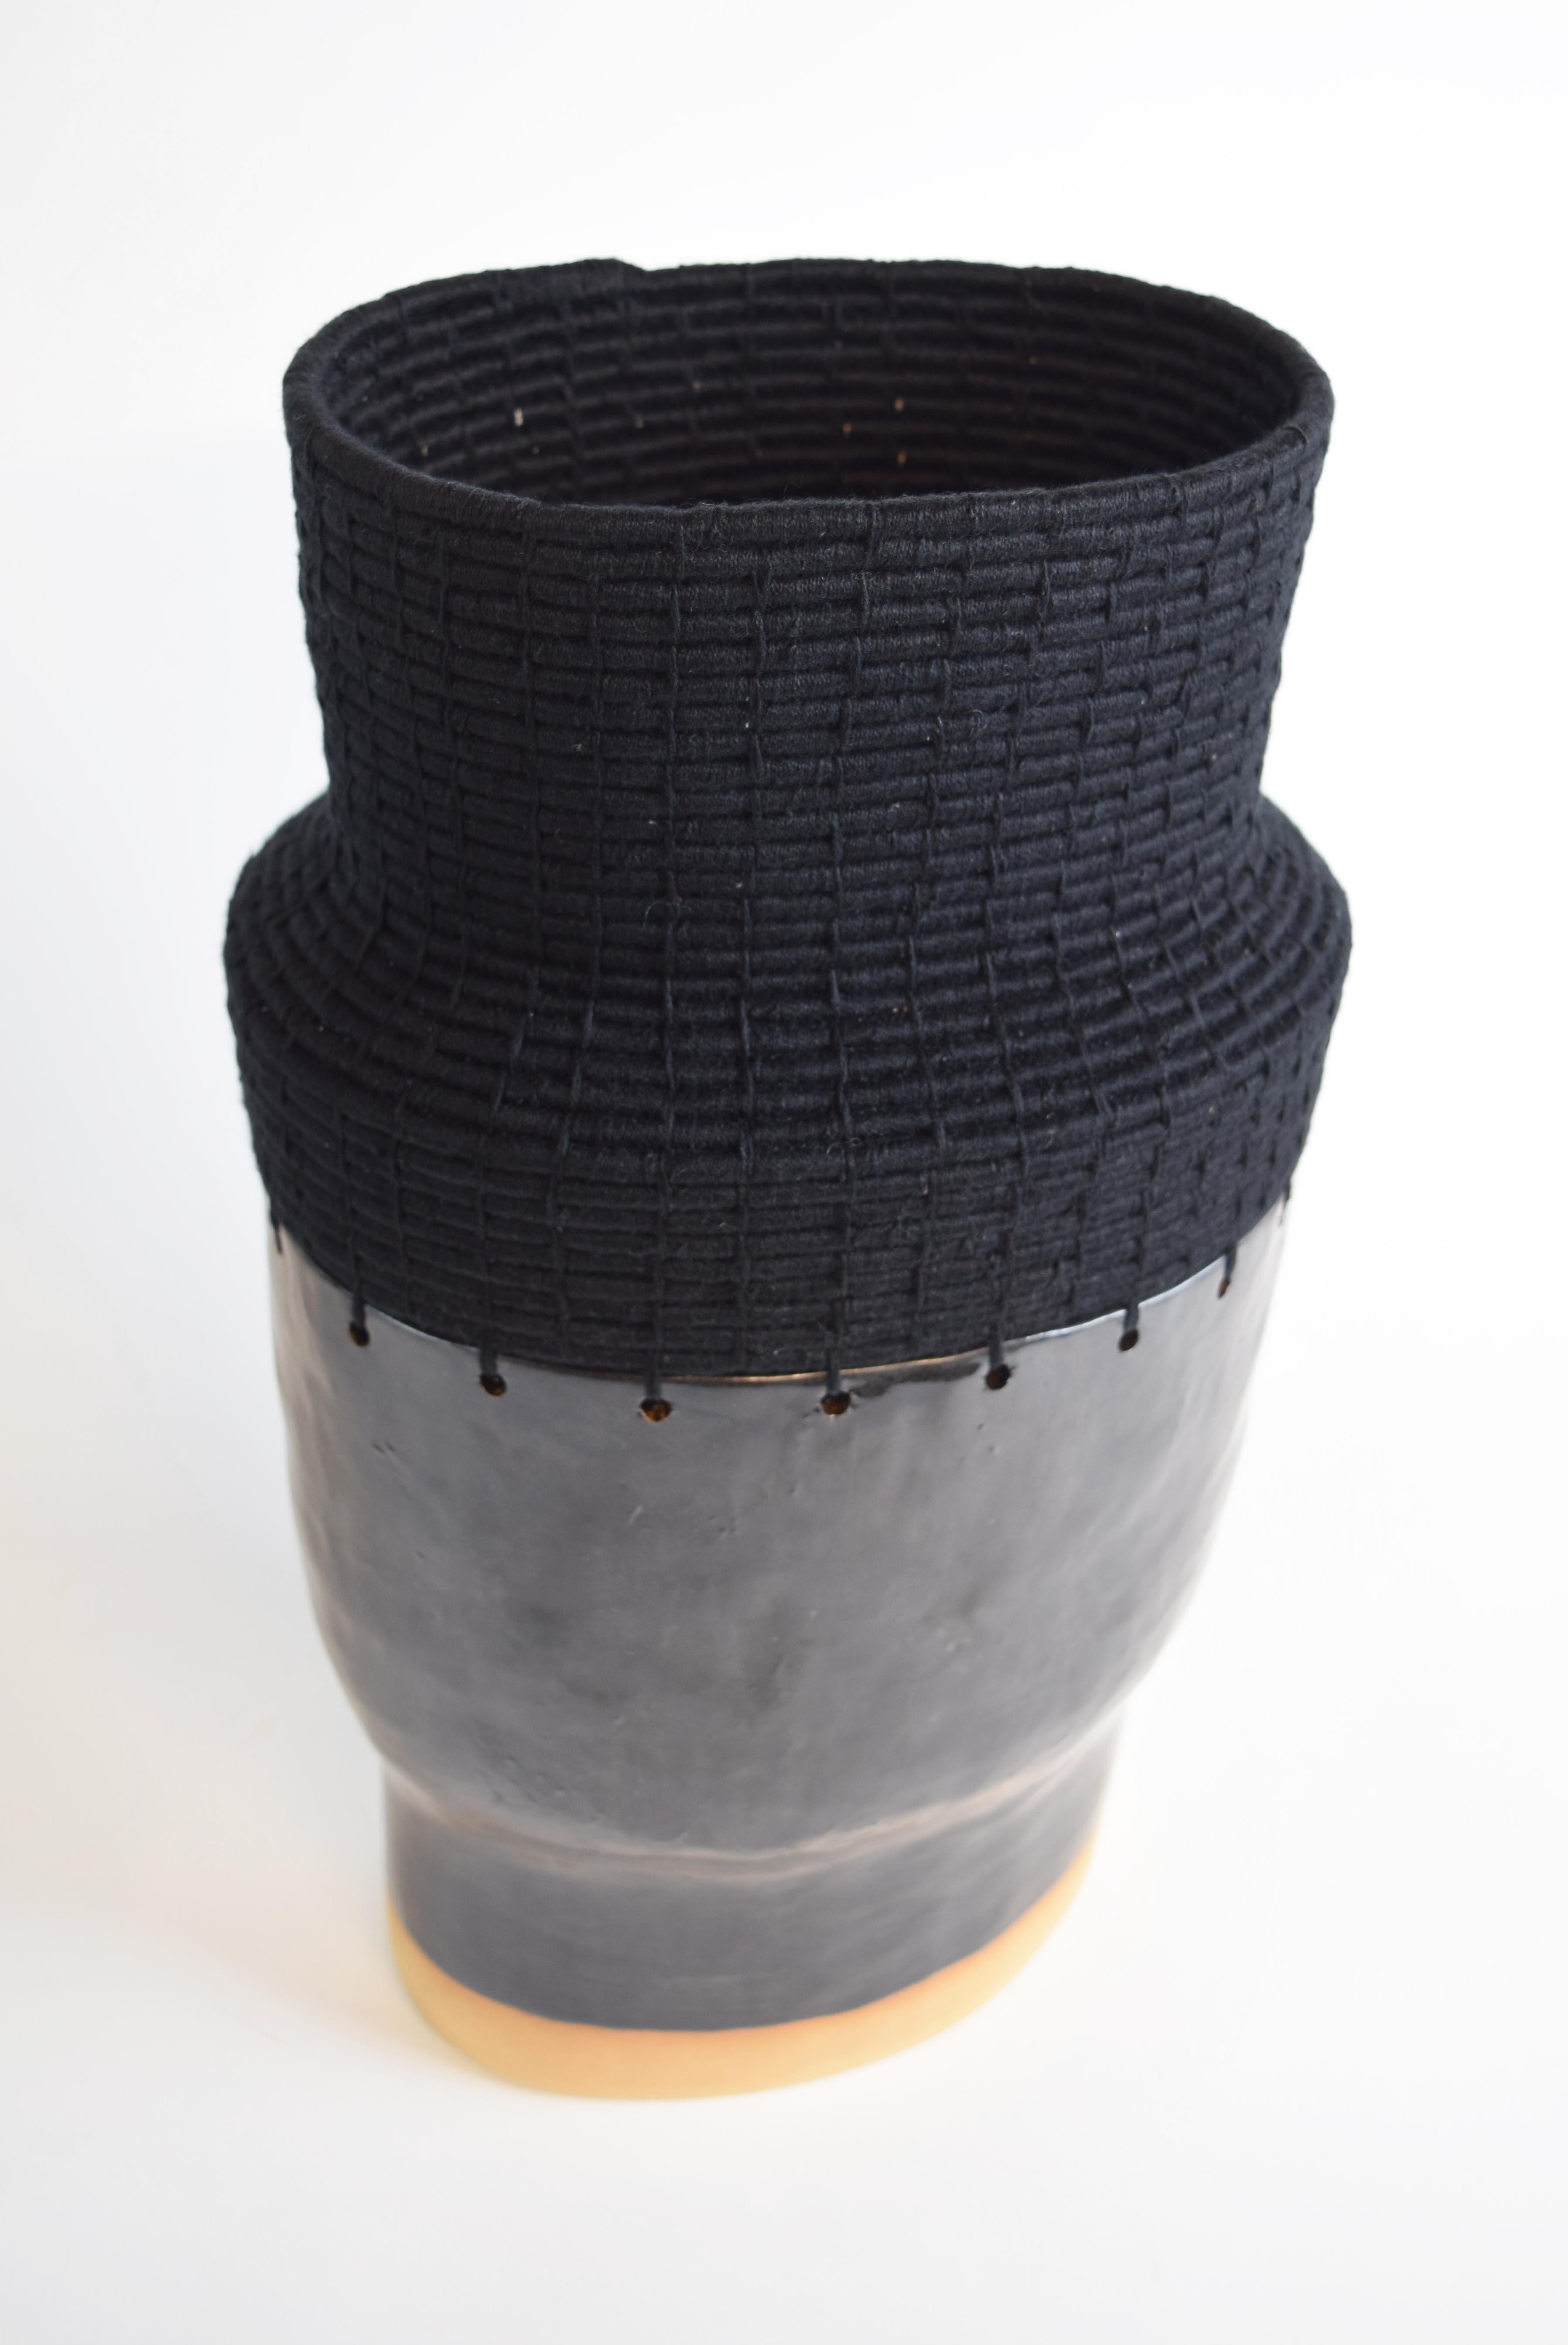 Handgeformter Sockel aus Steingut mit schwarzer Glasur. Der obere Teil ist aus schwarzer Baumwolle gewebt.

16 